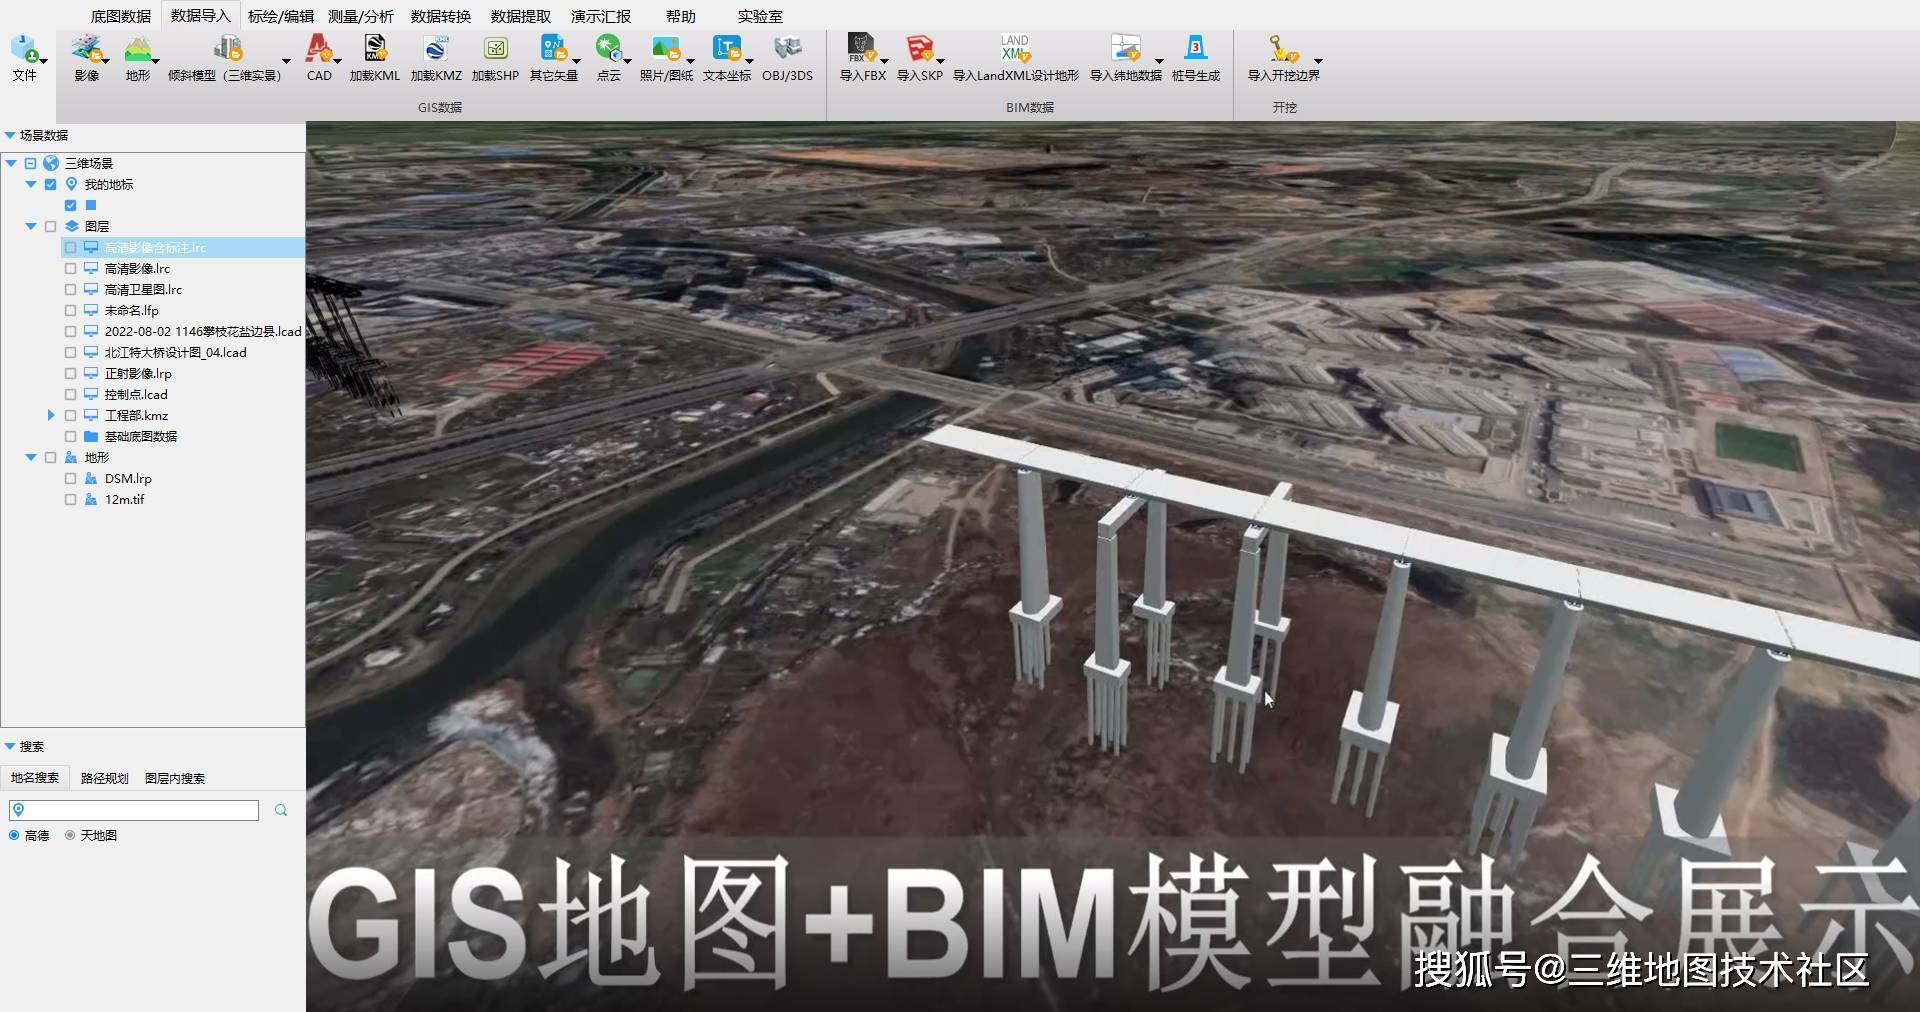 无人机航测倾斜摄影模型准确叠加影像地形工业大道用地cad gis平面图